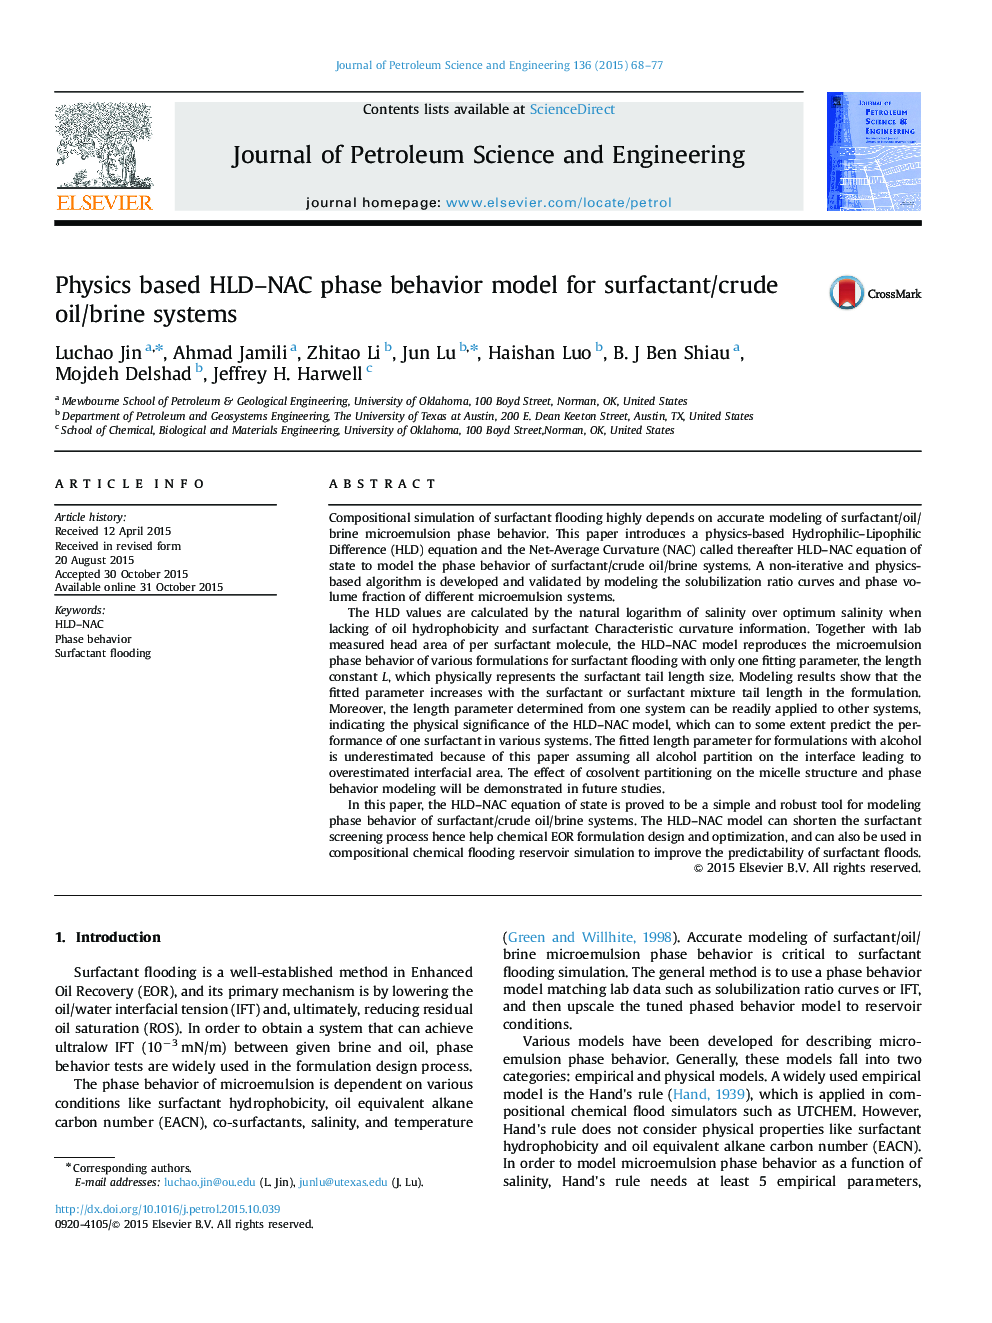 Physics based HLD–NAC phase behavior model for surfactant/crude oil/brine systems